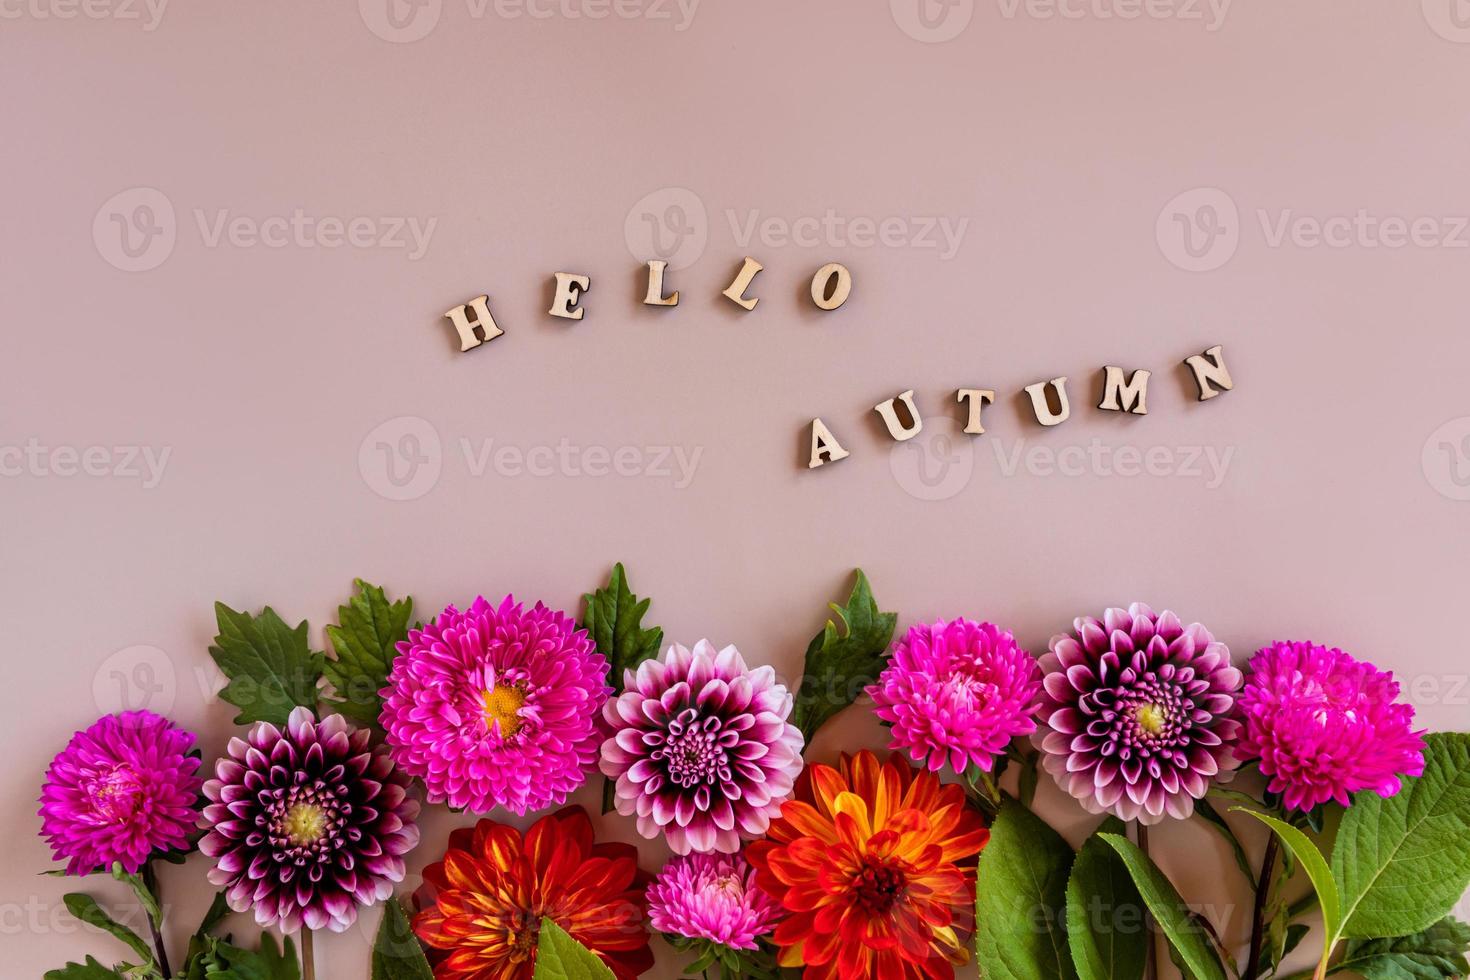 en ljus höst blommig gräns av asters och georginer på en beige bakgrund. text av trä- brev - Hej höst. höst floristisk begrepp. foto